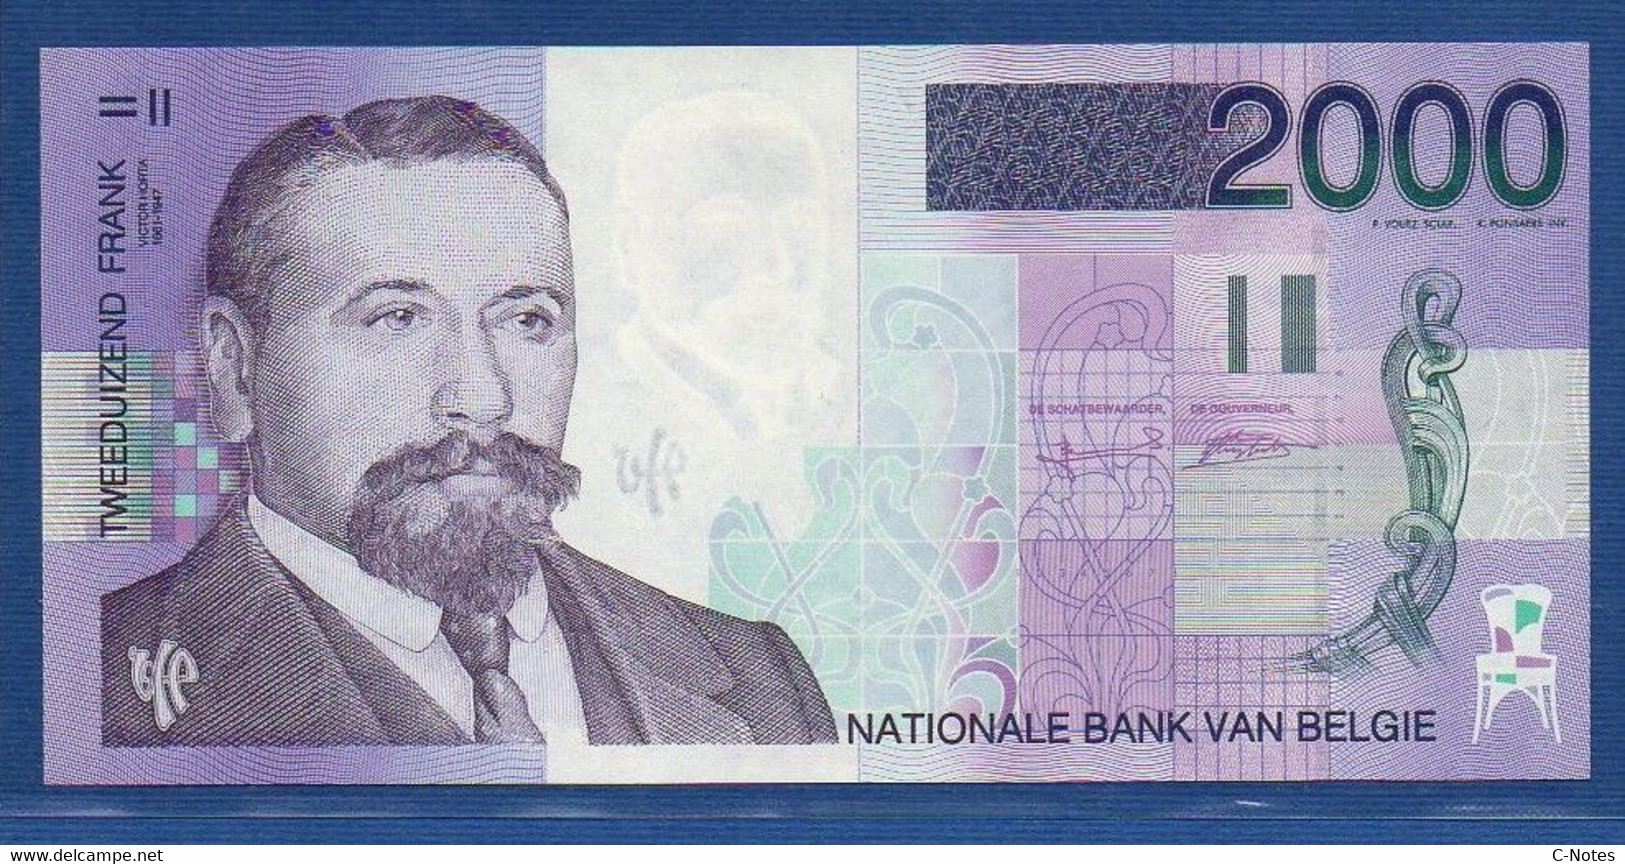 BELGIUM - P.151 - 2000 Francs ND (1994-2001) UNC, Serie 83400570957 - 2000 Francos